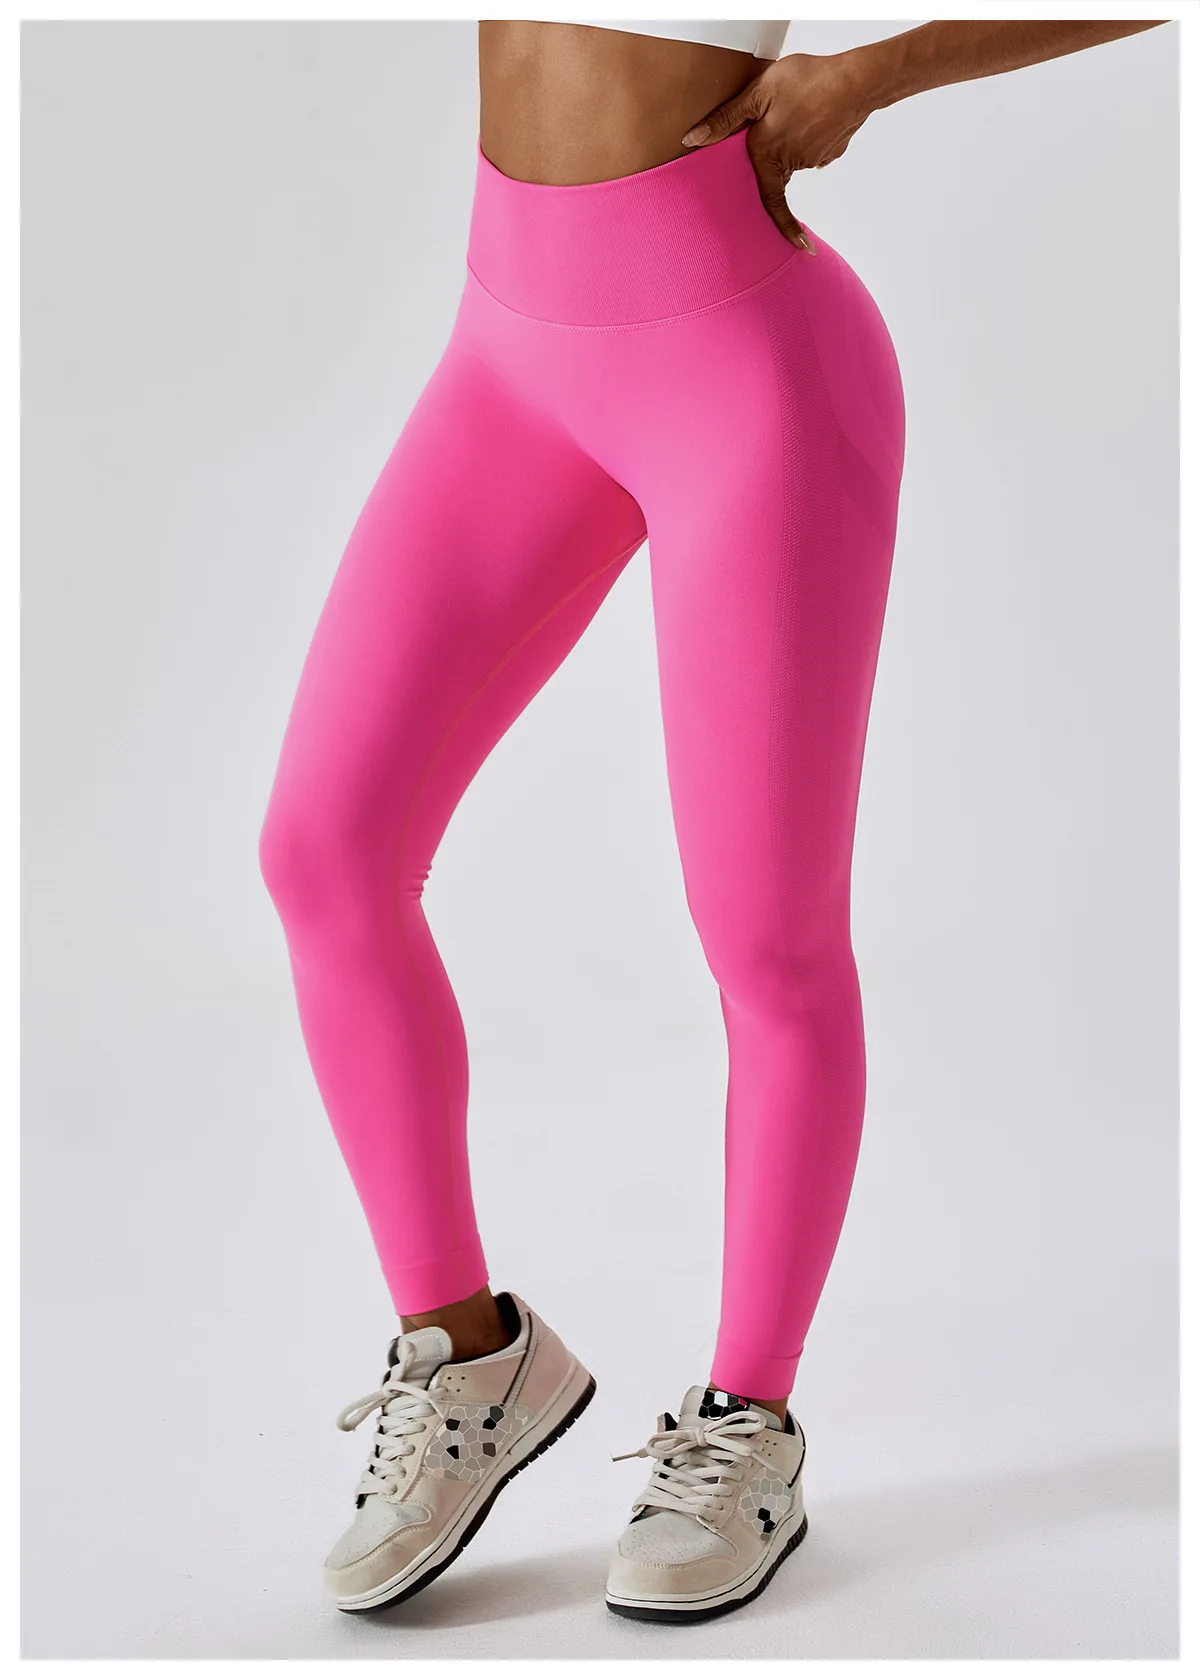 Custom Label Seamless Sports Yoga Pants Workout Butt Lift High Waist ...